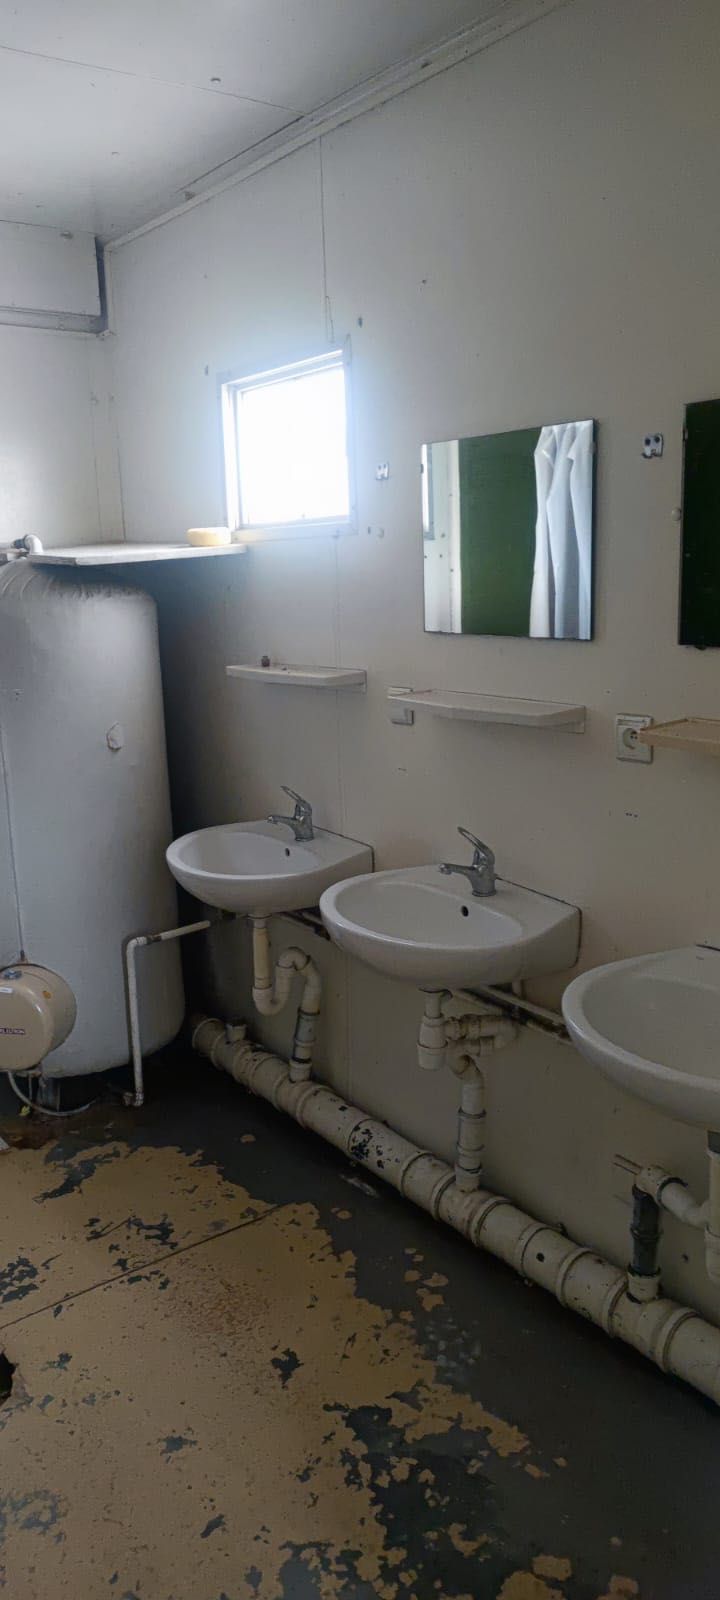 Kontenery sanitarne (SPRAWNE, SUCHE W DOBRYM STANIE)